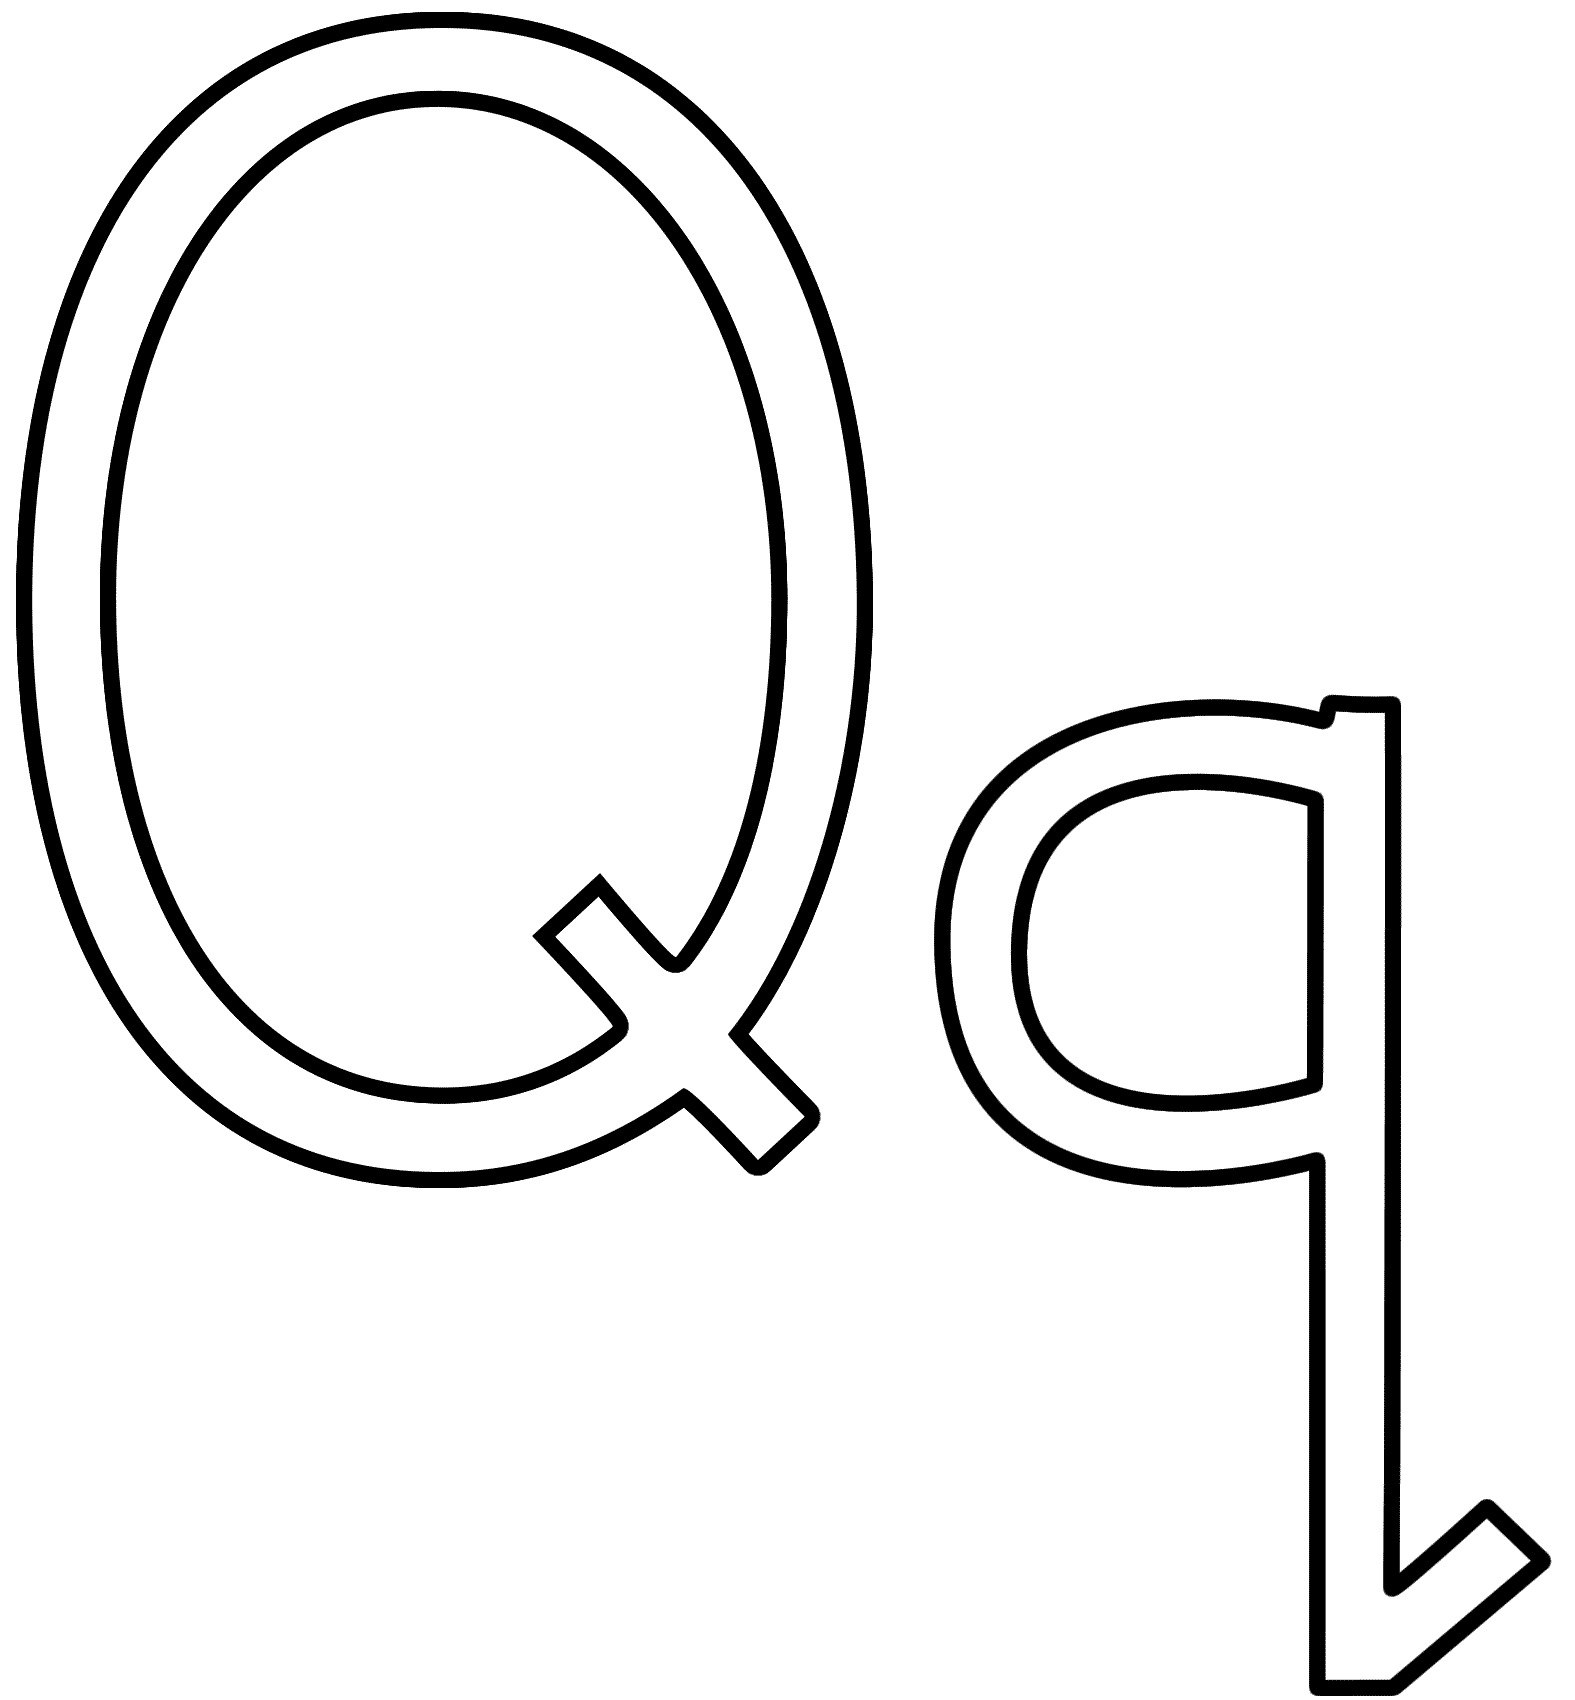 Letter Q - Coloring Page (Alphabet)